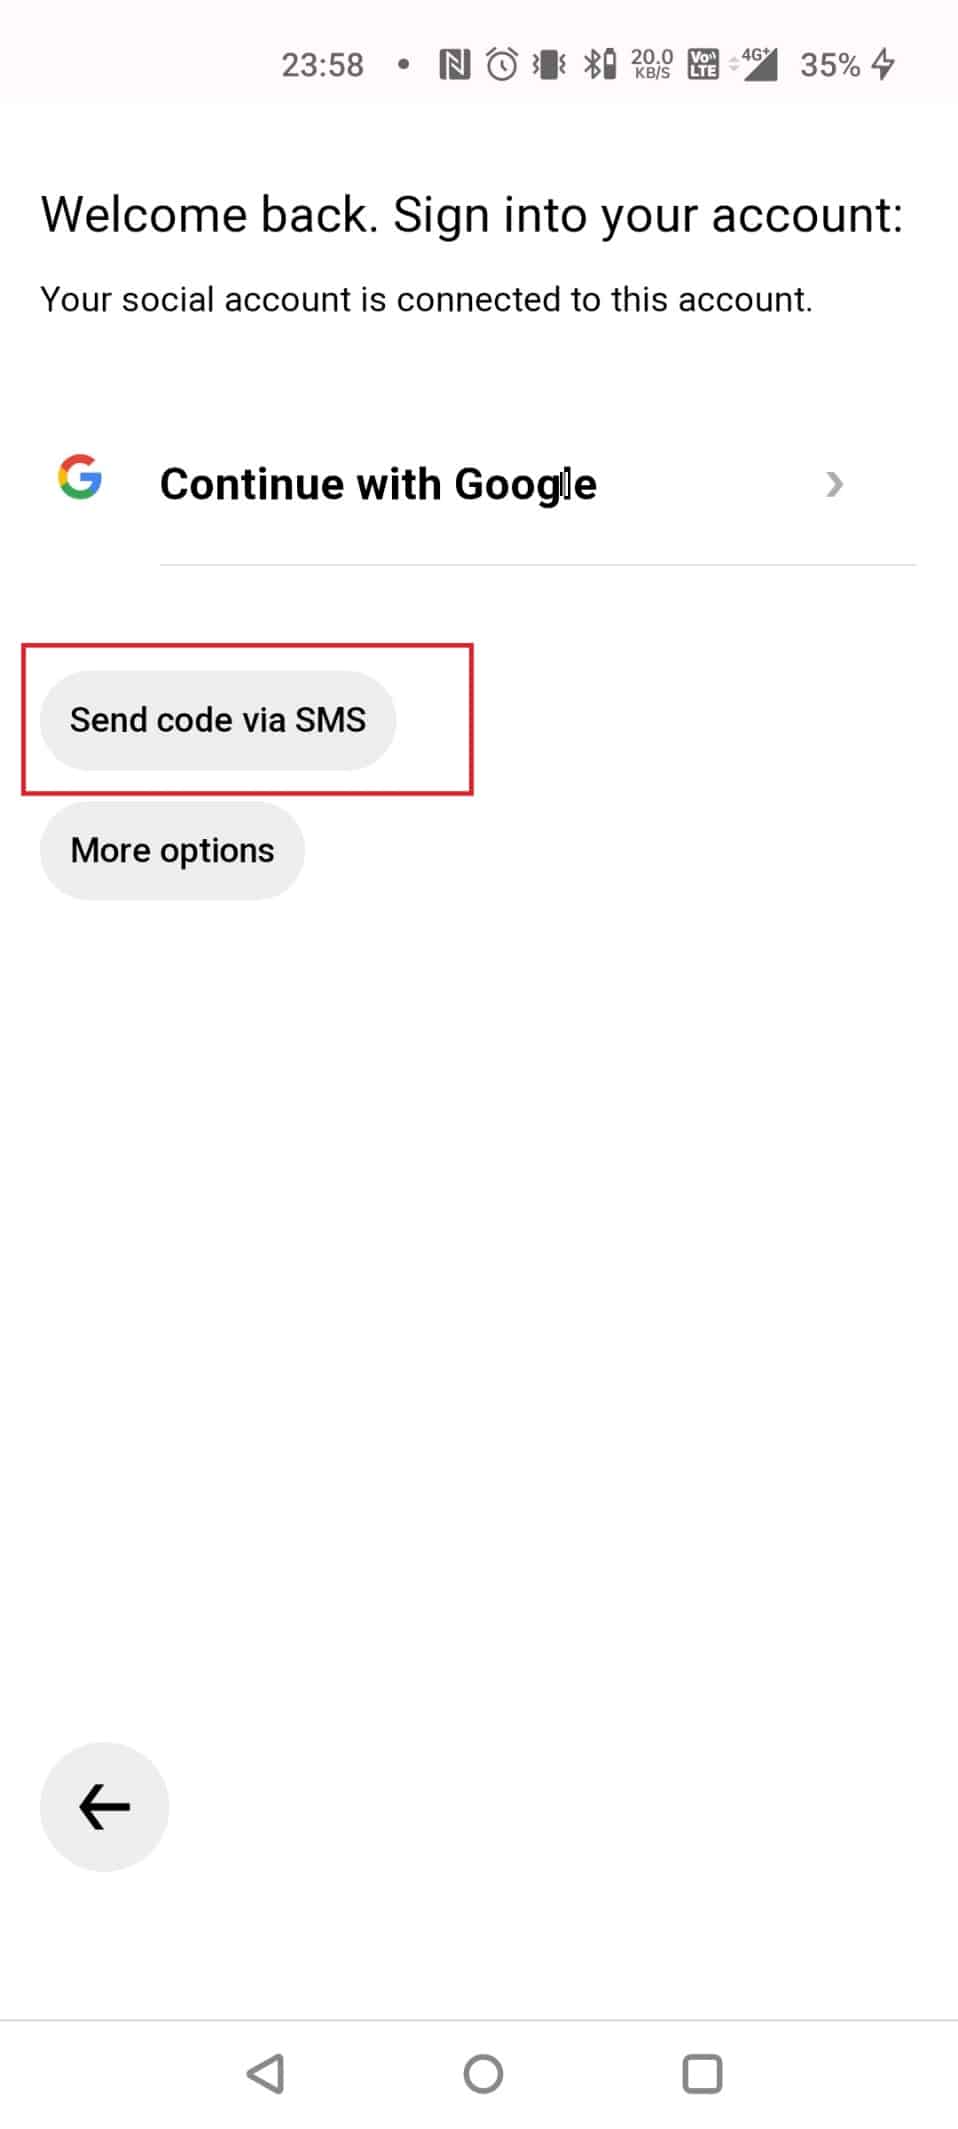 SMS를 통해 코드 보내기를 선택하세요.